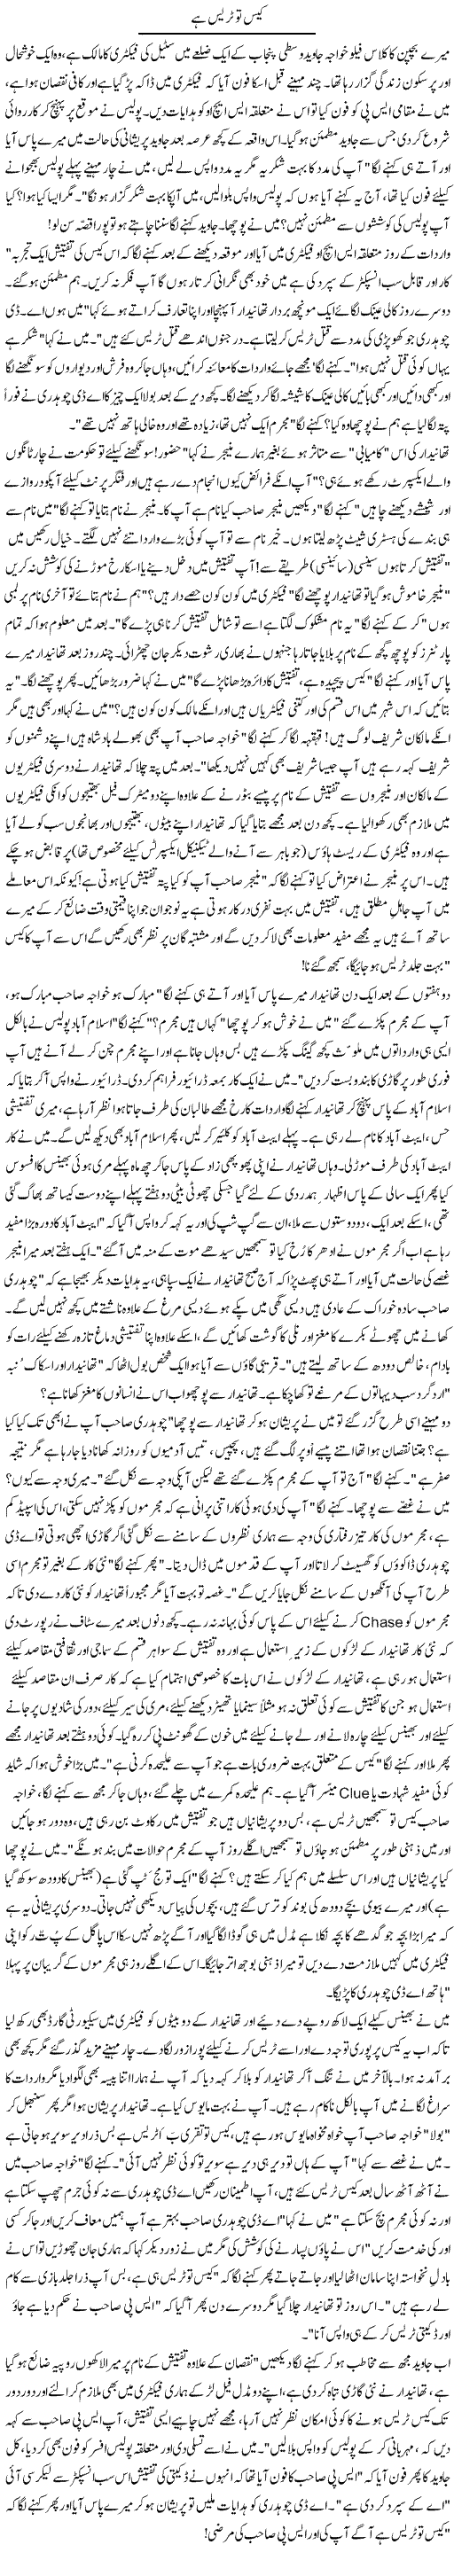 Case To Trase Hai | Zulfiqar Ahmed Cheema | Daily Urdu Columns